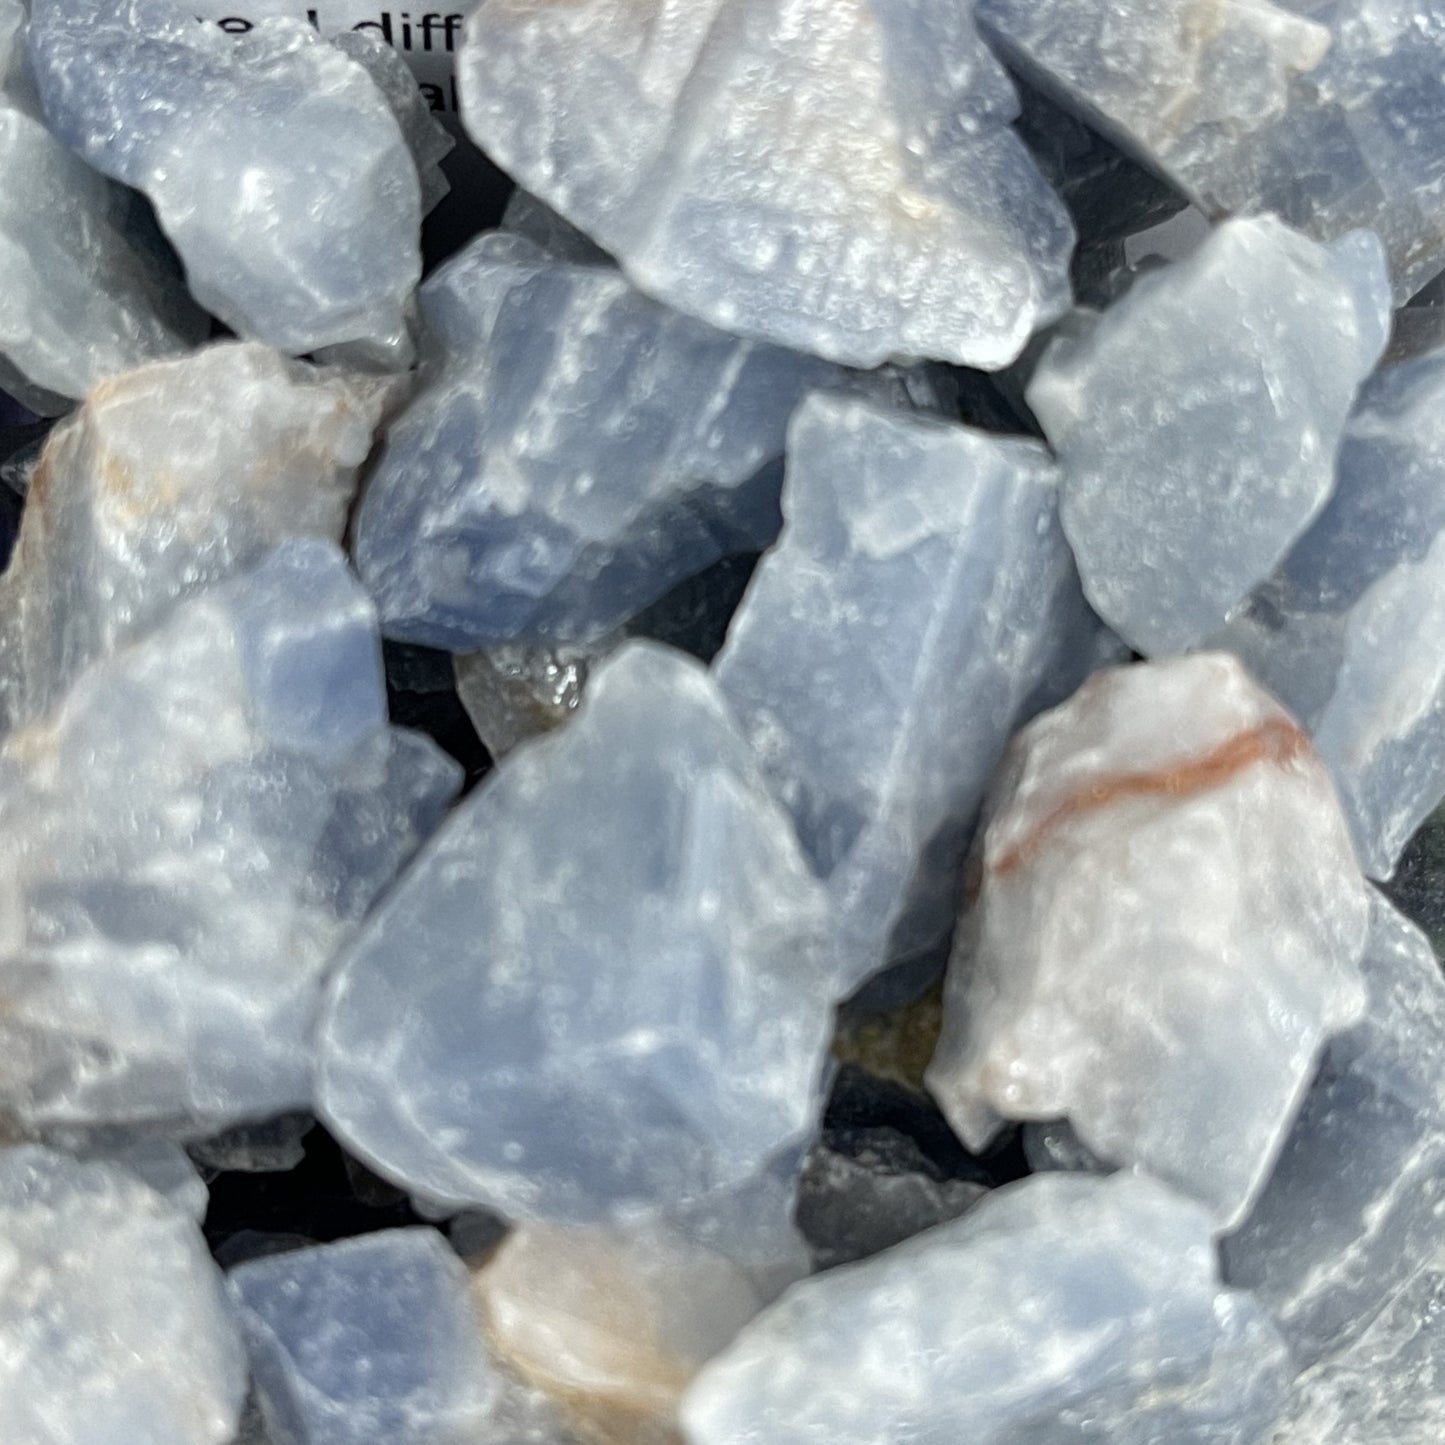 Blue Calcite Raw